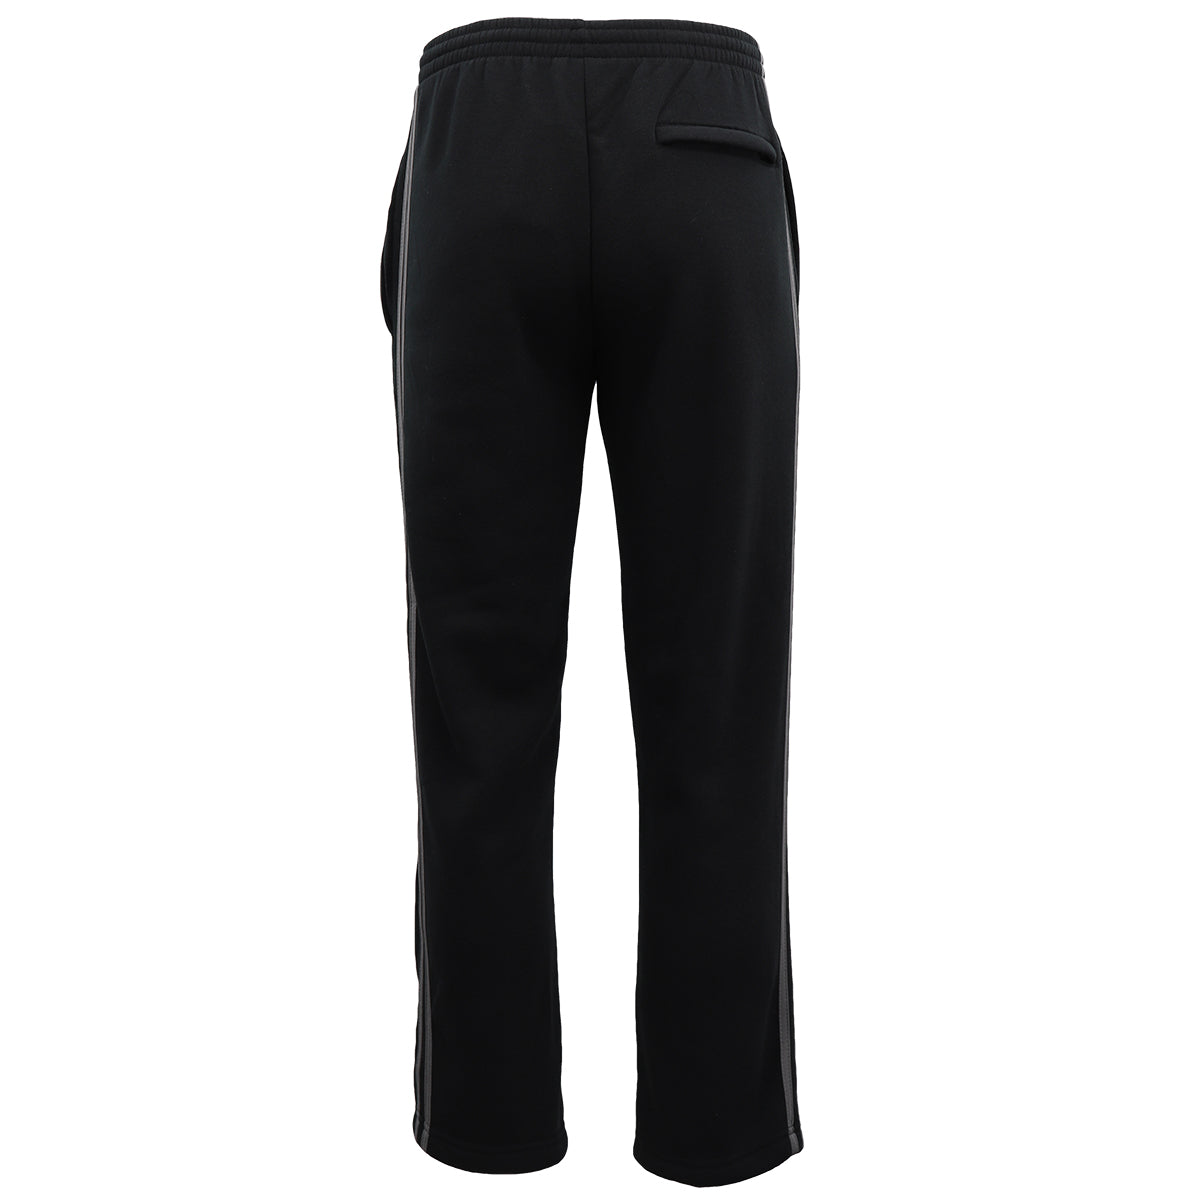 Men's Fleece Casual Sports Track Pants w Zip Pocket Striped Sweat Trousers S-6XL, Grey, S